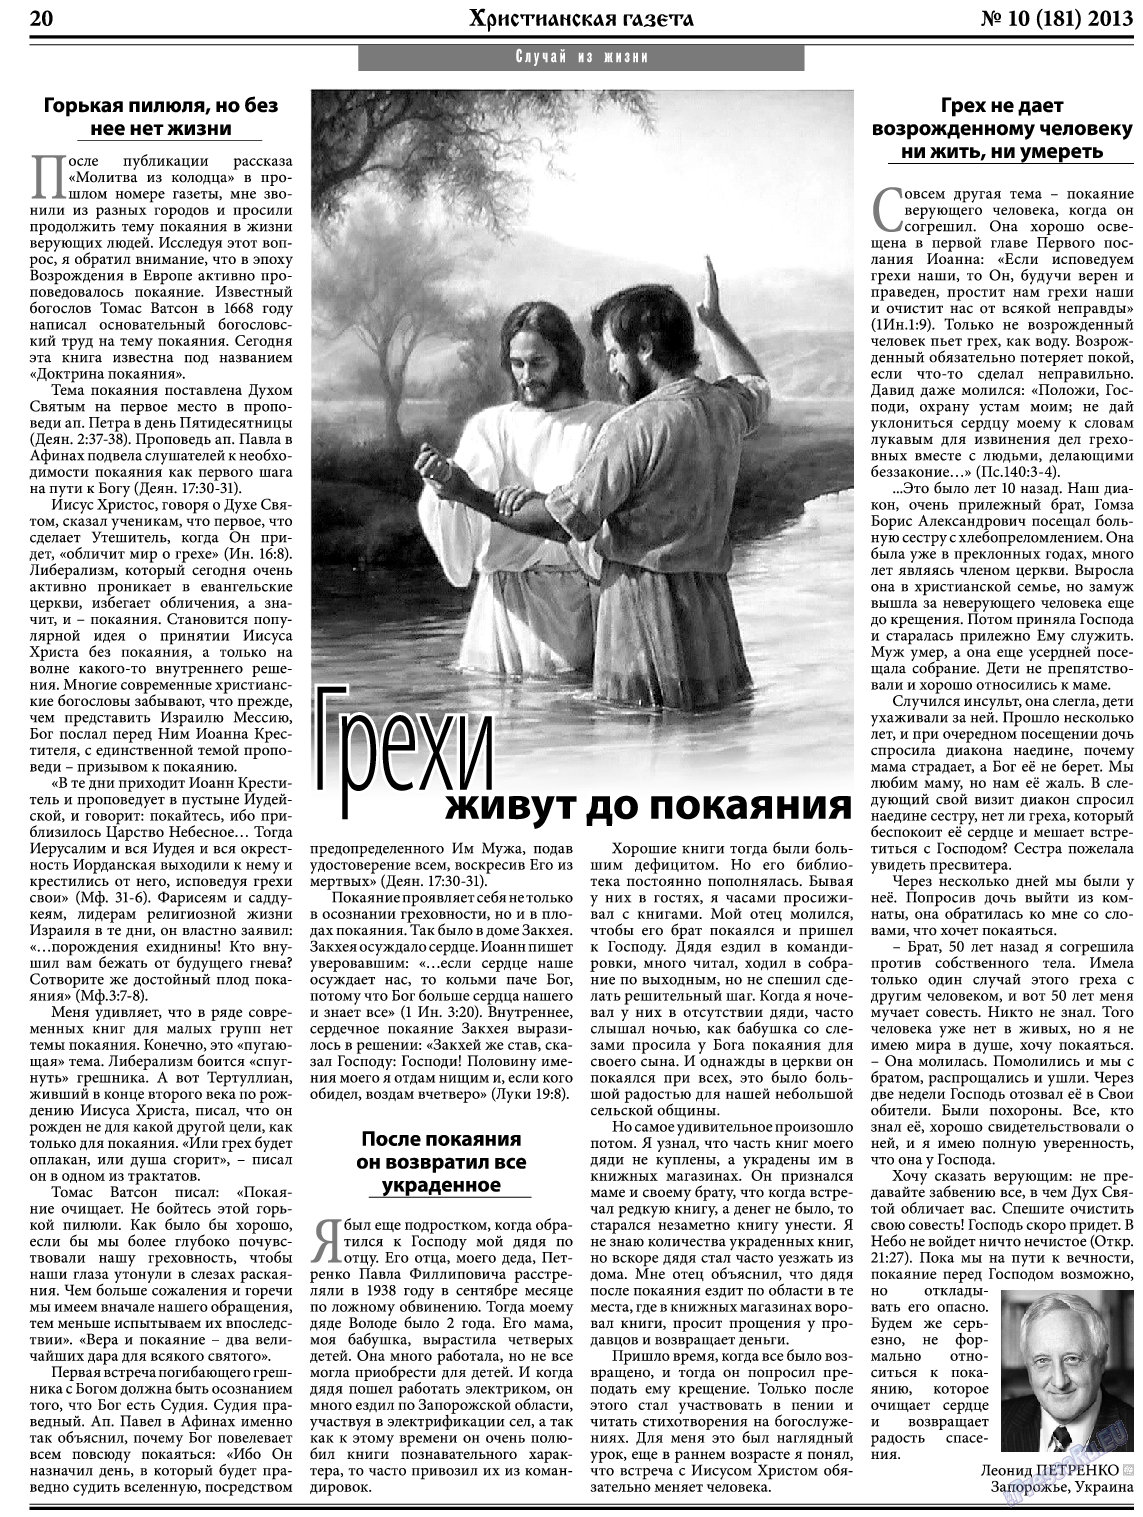 Христианская газета, газета. 2013 №10 стр.28